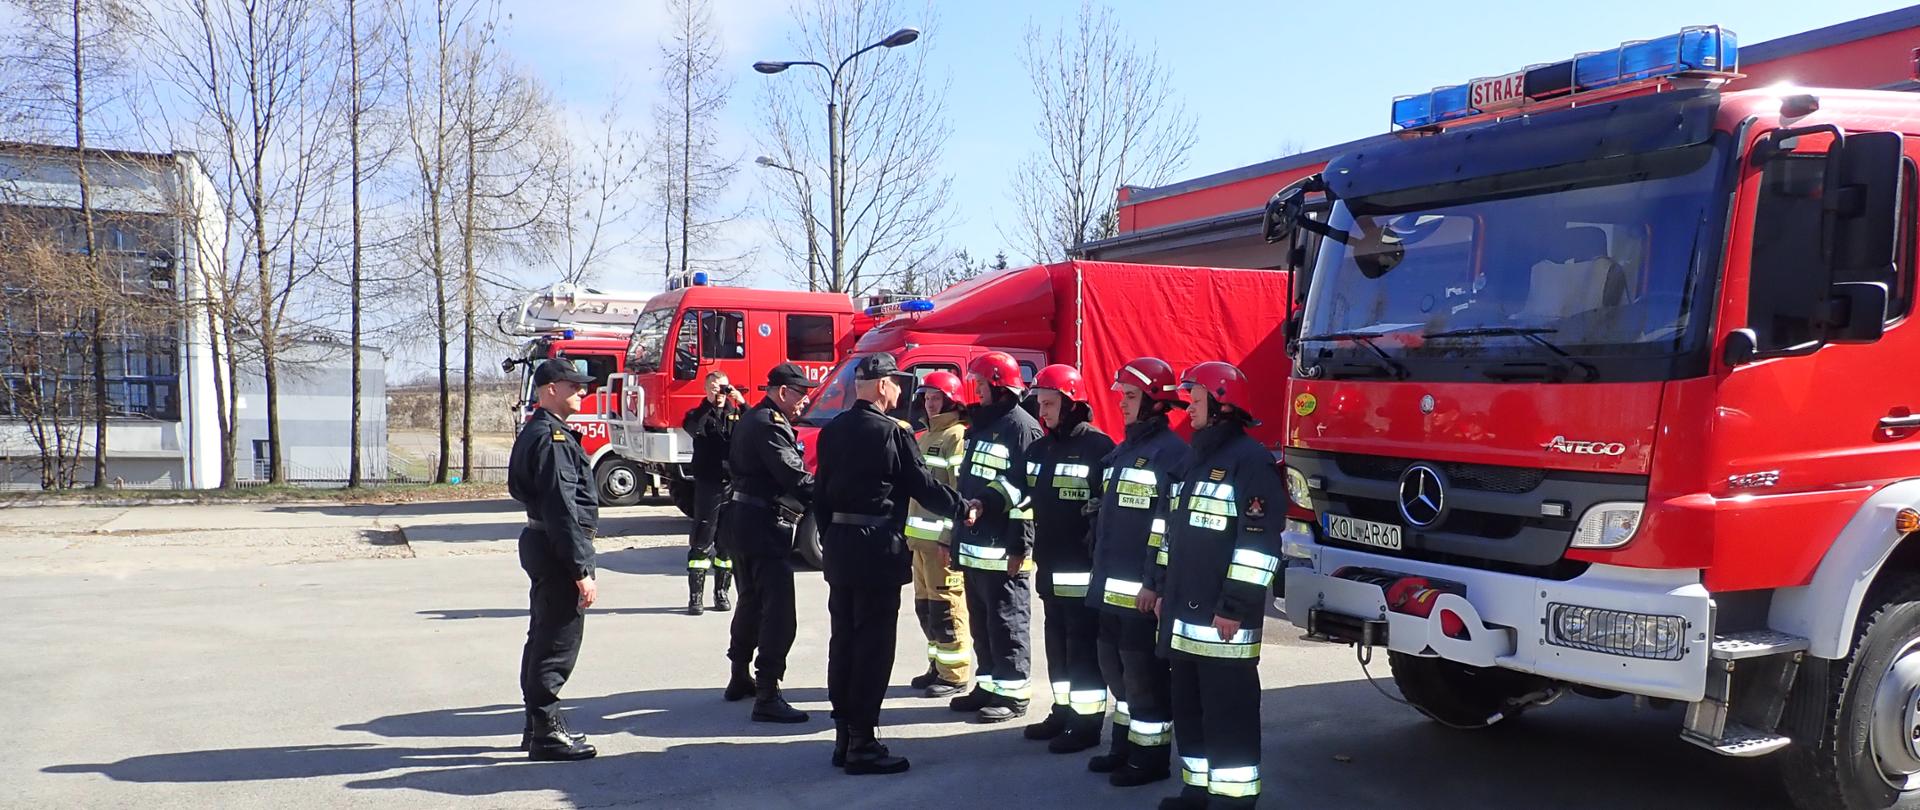 Komendant Główny oraz Komendant Wojewódzki ubrani w ubrania dowódczo sztabowe witają się ze strażakami stojącymi w szyku, Strażacy ubrani w ubrania specjalne w hełmach stoją przed samochodami pożarniczymi.